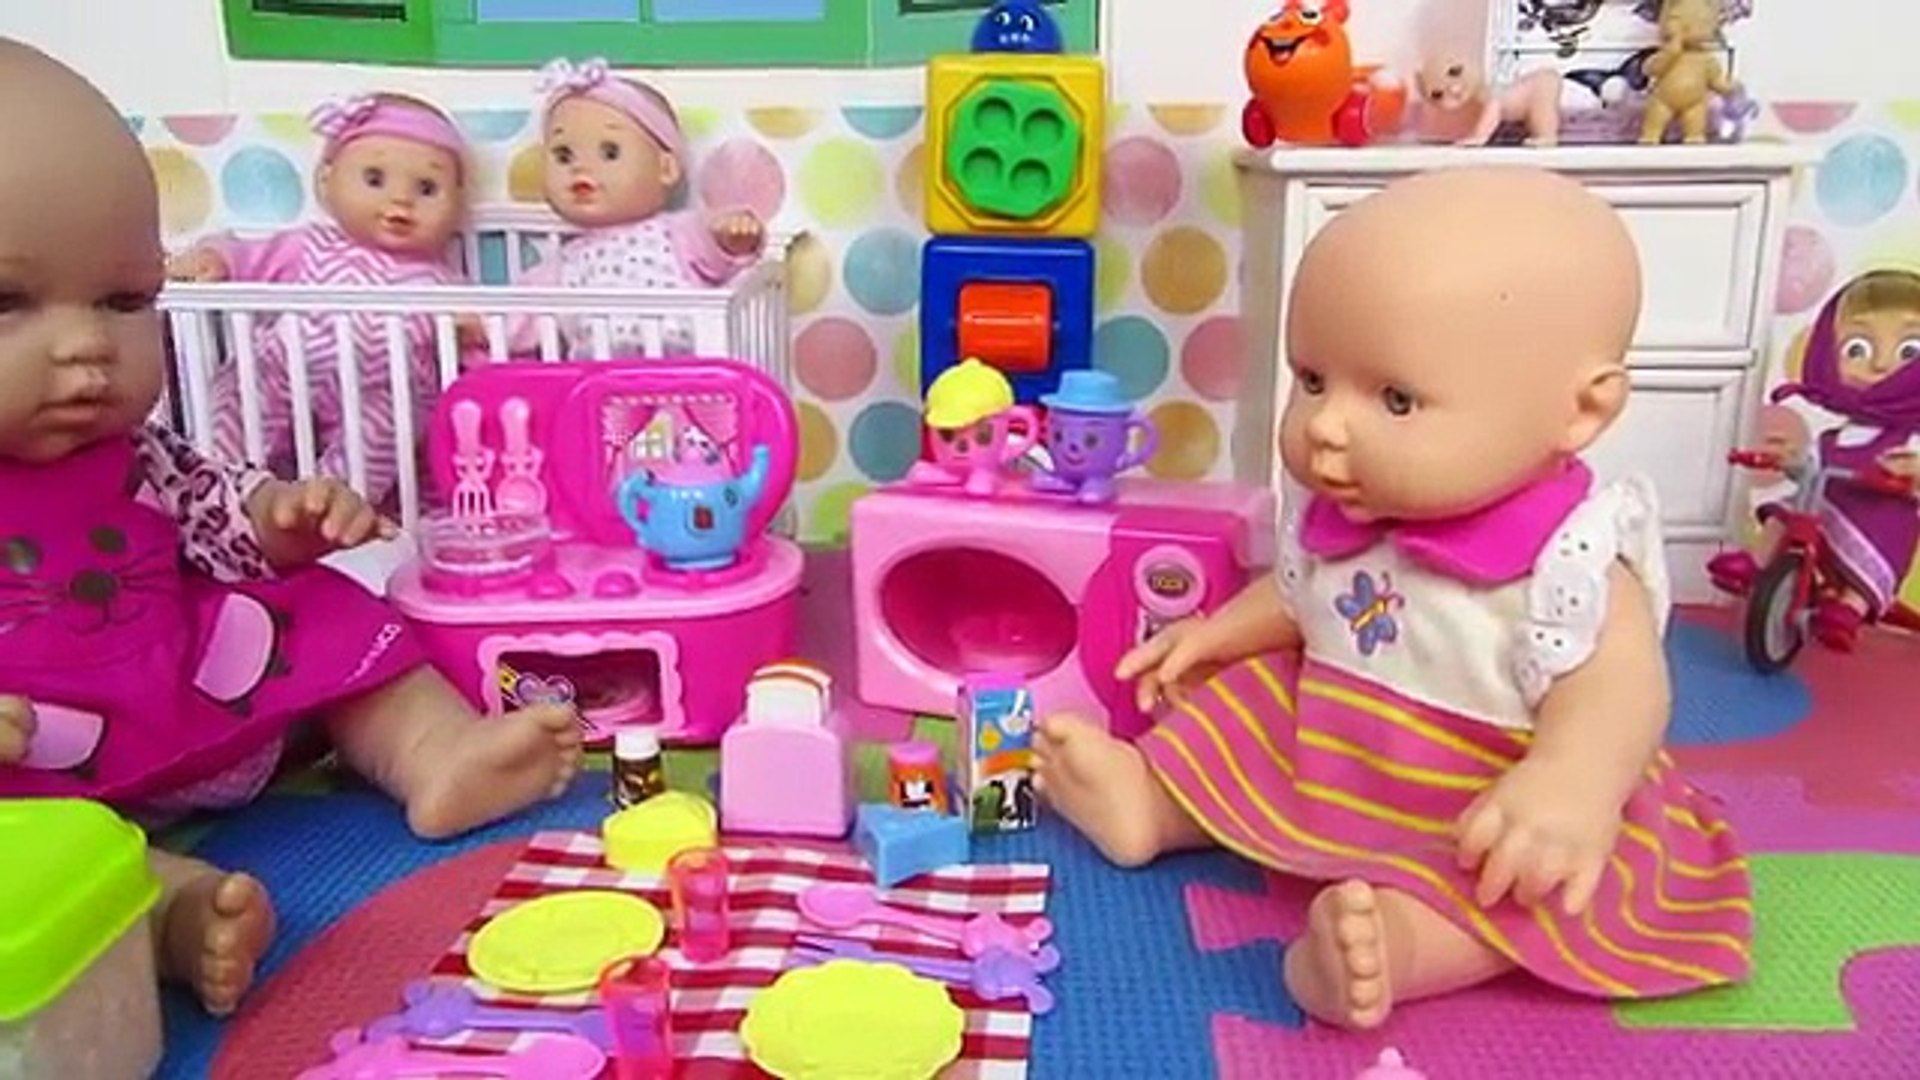 Jugando a cocinas de juguete con bebé Lucía Ana Mundo Juguetes vídeos de bebés de juguete─影片 Dailymotion